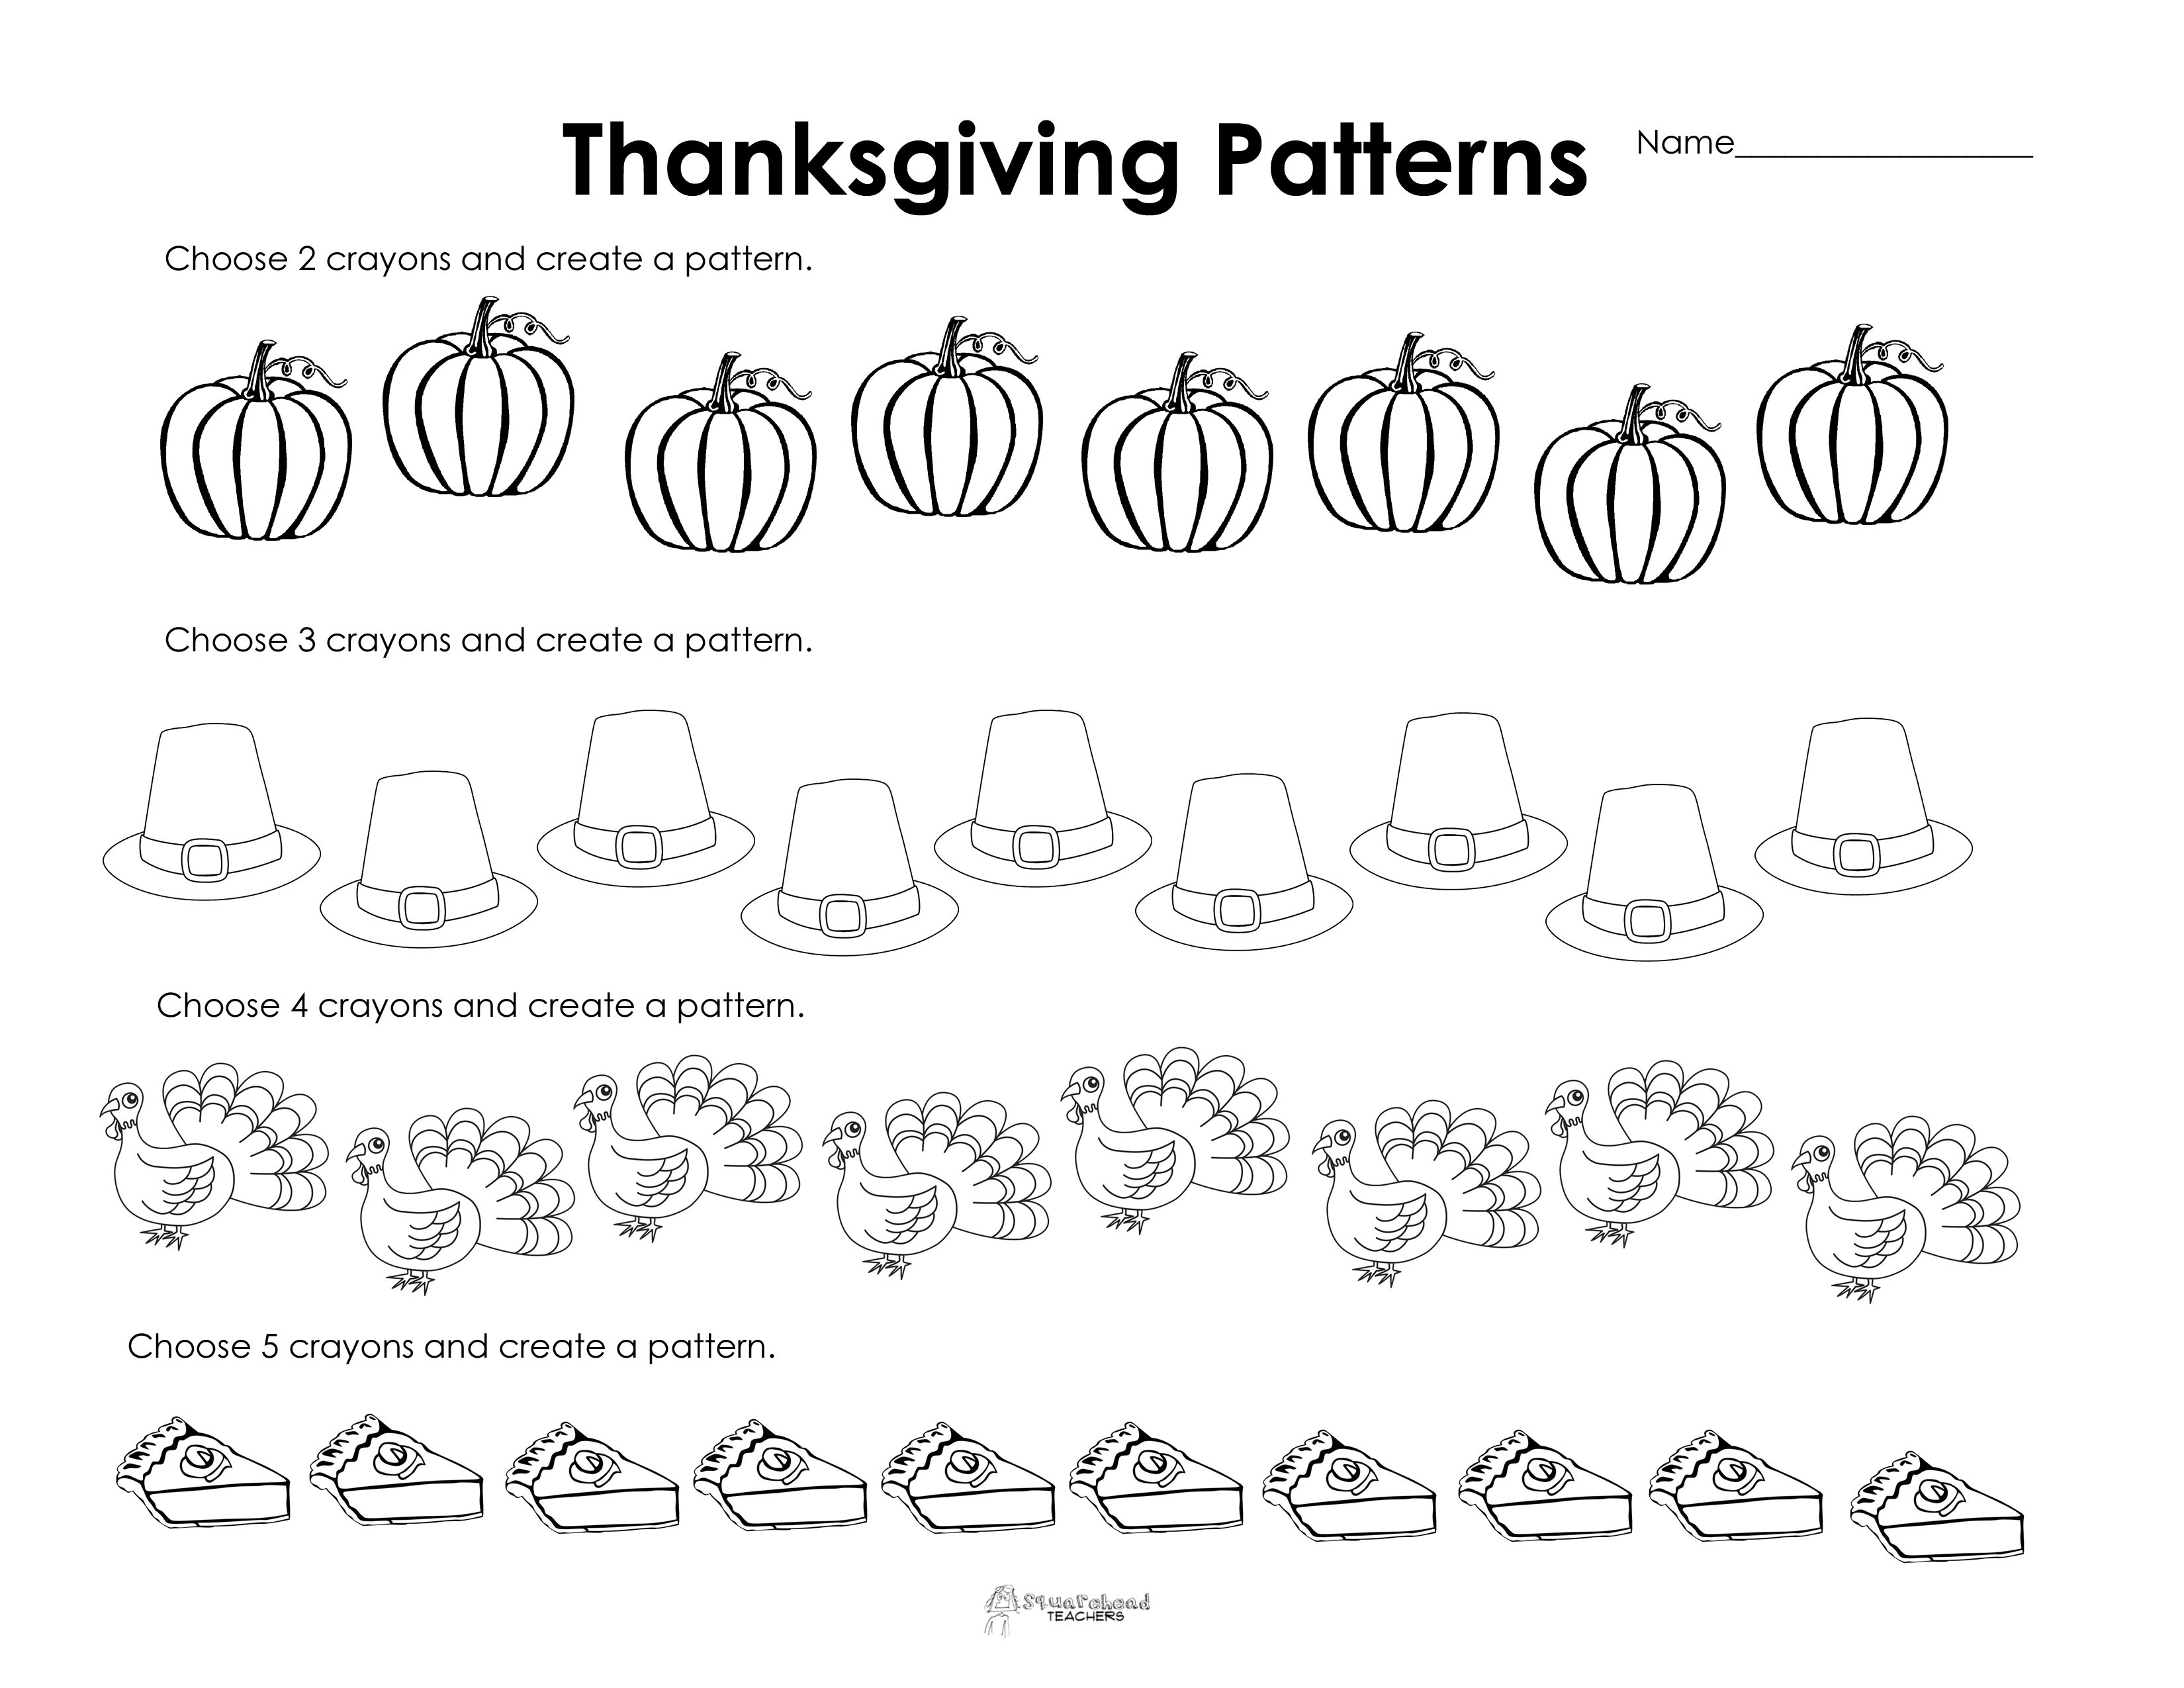 Making Patterns Thanksgiving Style Free Worksheet  Squarehead Regarding Free Printable Thanksgiving Math Worksheets For 3Rd Grade